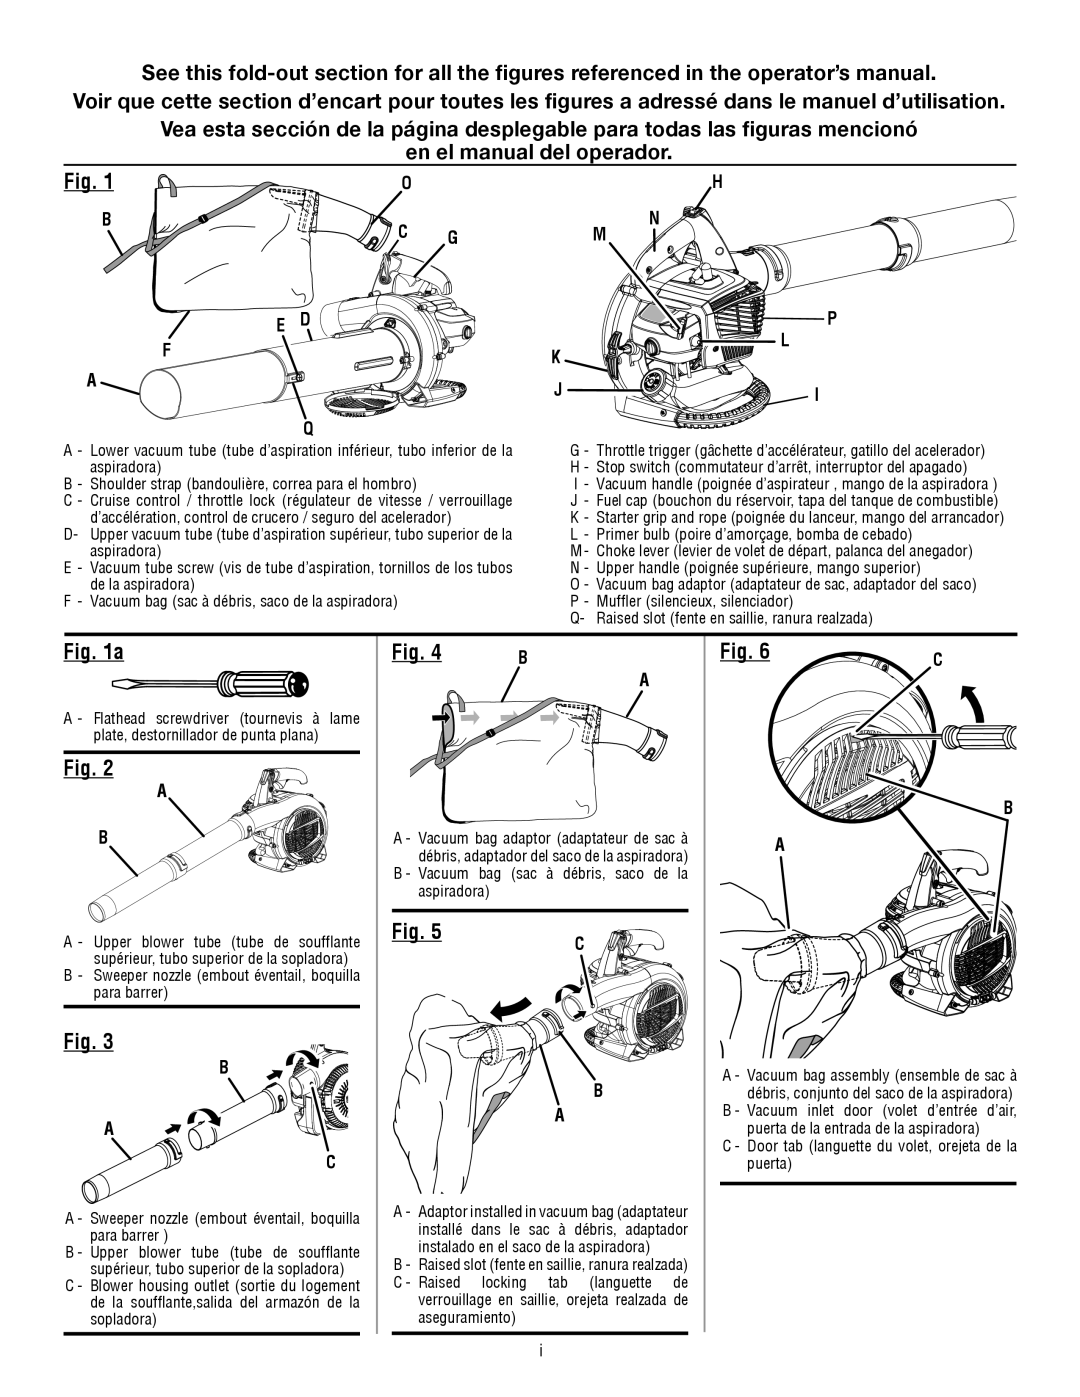 Ryobi RY09053 manuel dutilisation en el manual del operador 